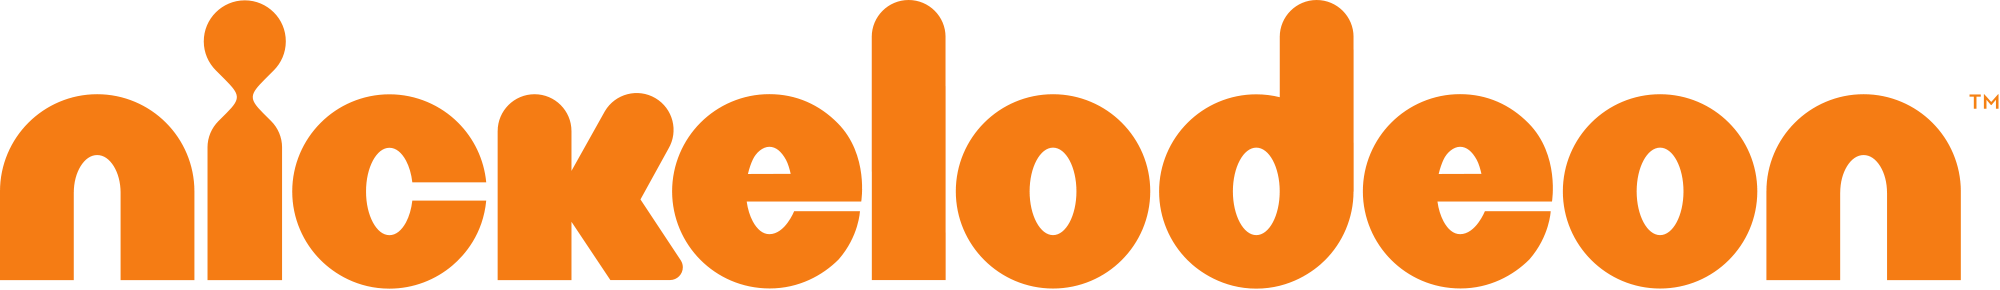 Dönüyoruz.. Nickelodeon_logo_2009